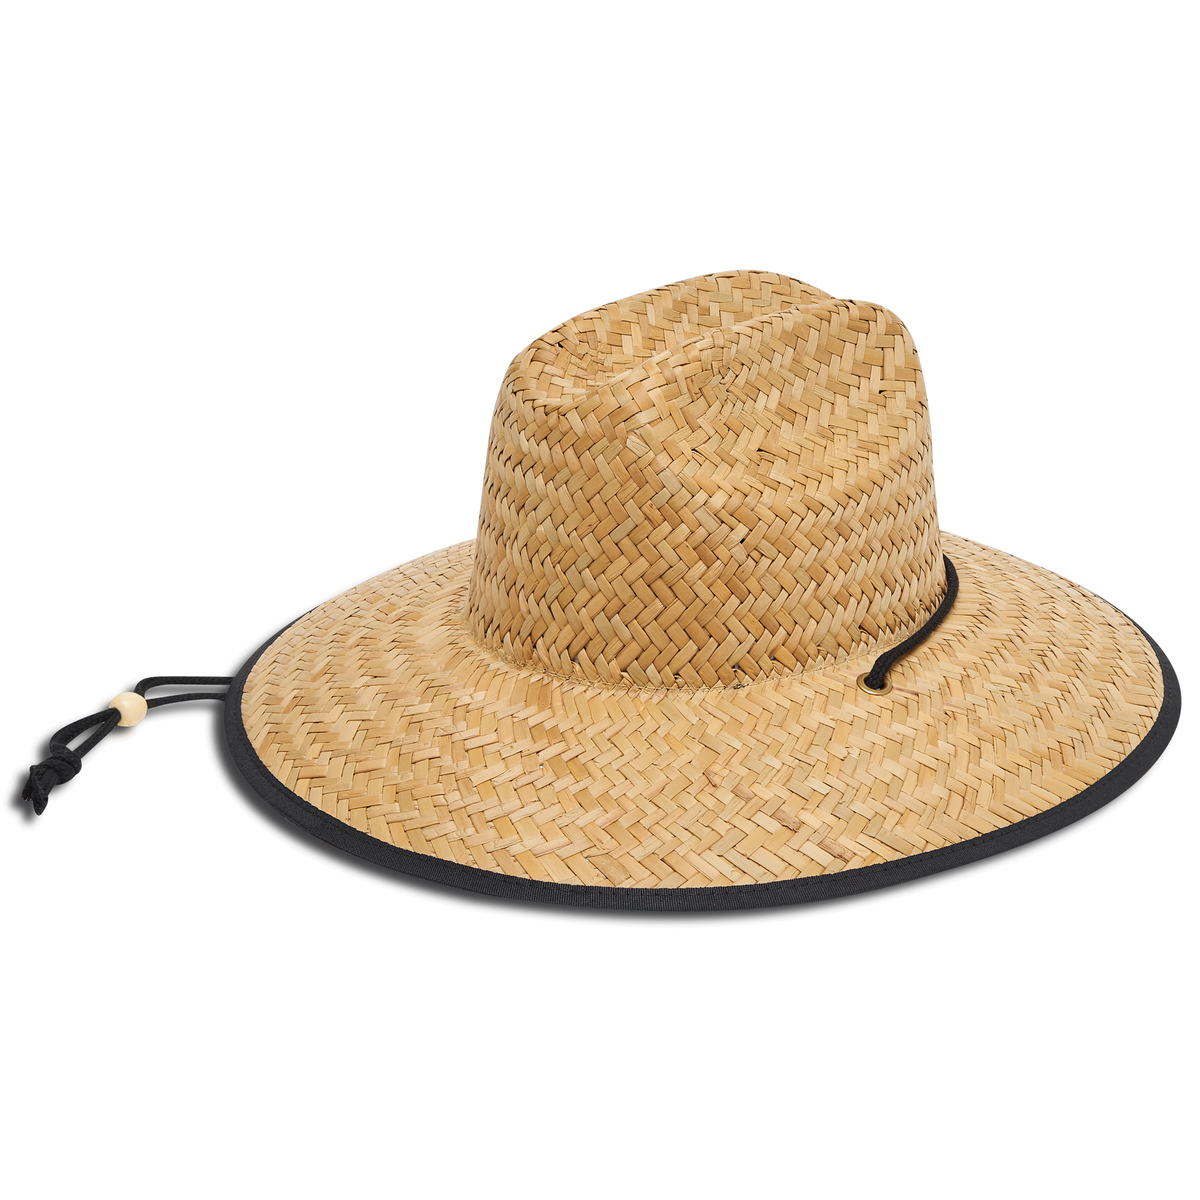 Costa Lifeguard Straw Hat - Fiesta Print